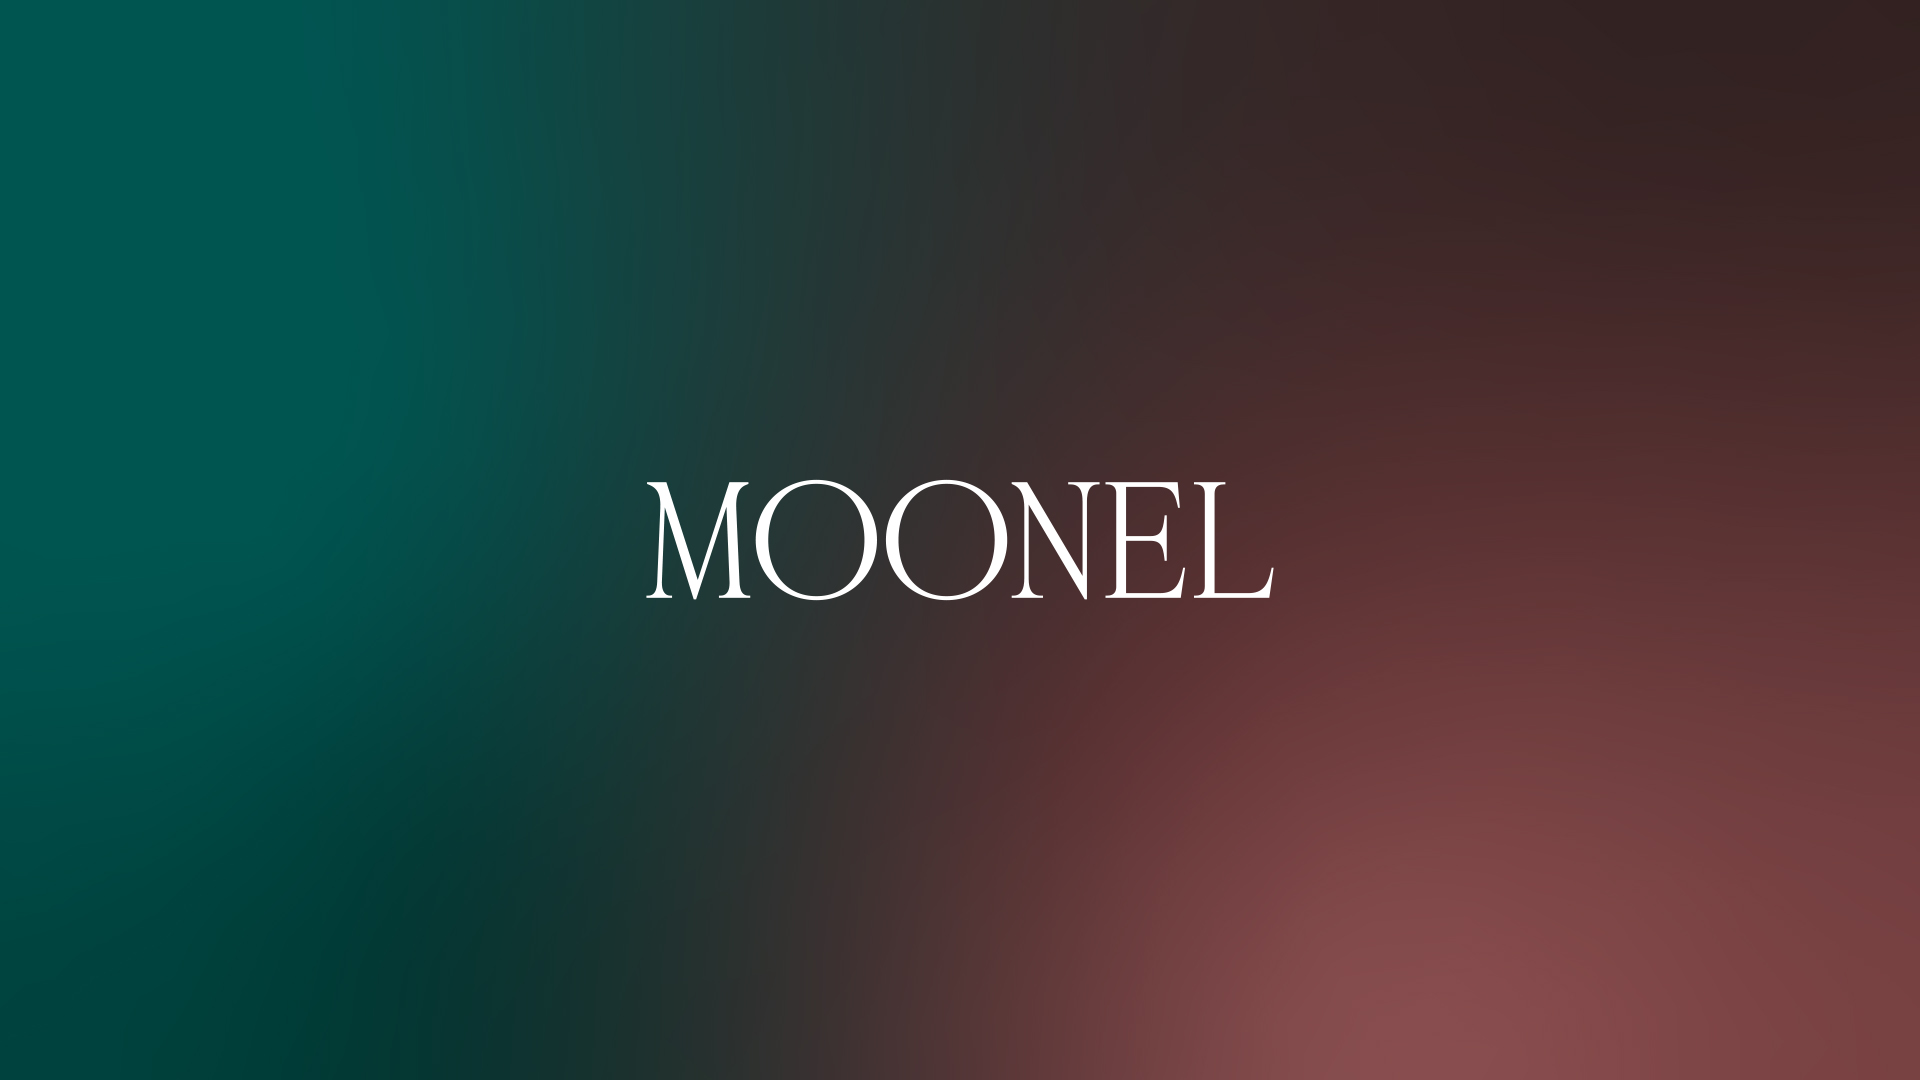 Moonel Cappelli Identity Design